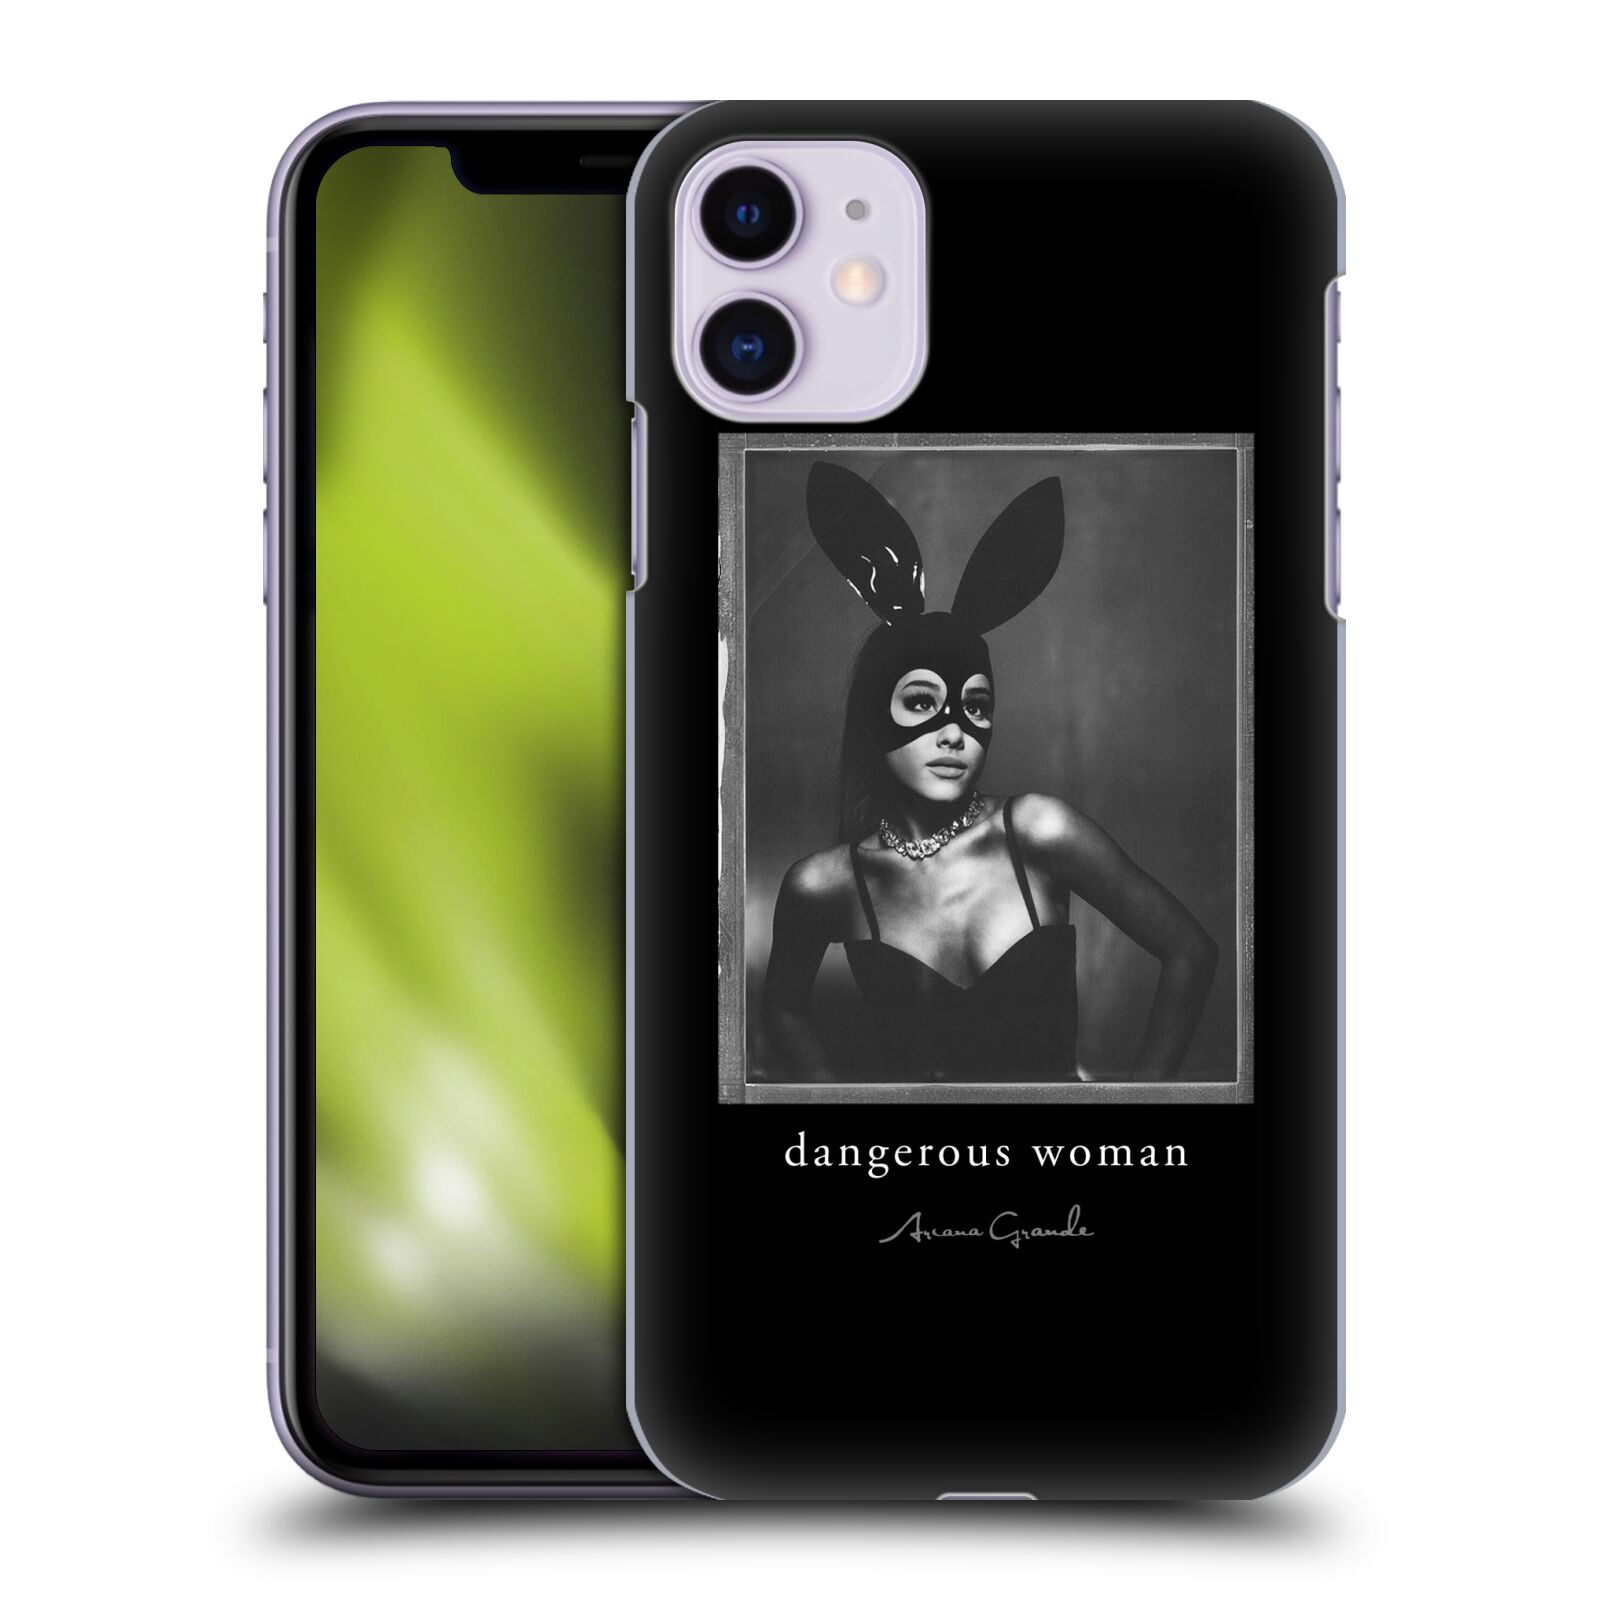 Pouzdro na mobil Apple Iphone 11 - HEAD CASE - zpěvačka Ariana Grande Dangerous Woman černá zajíček převlek